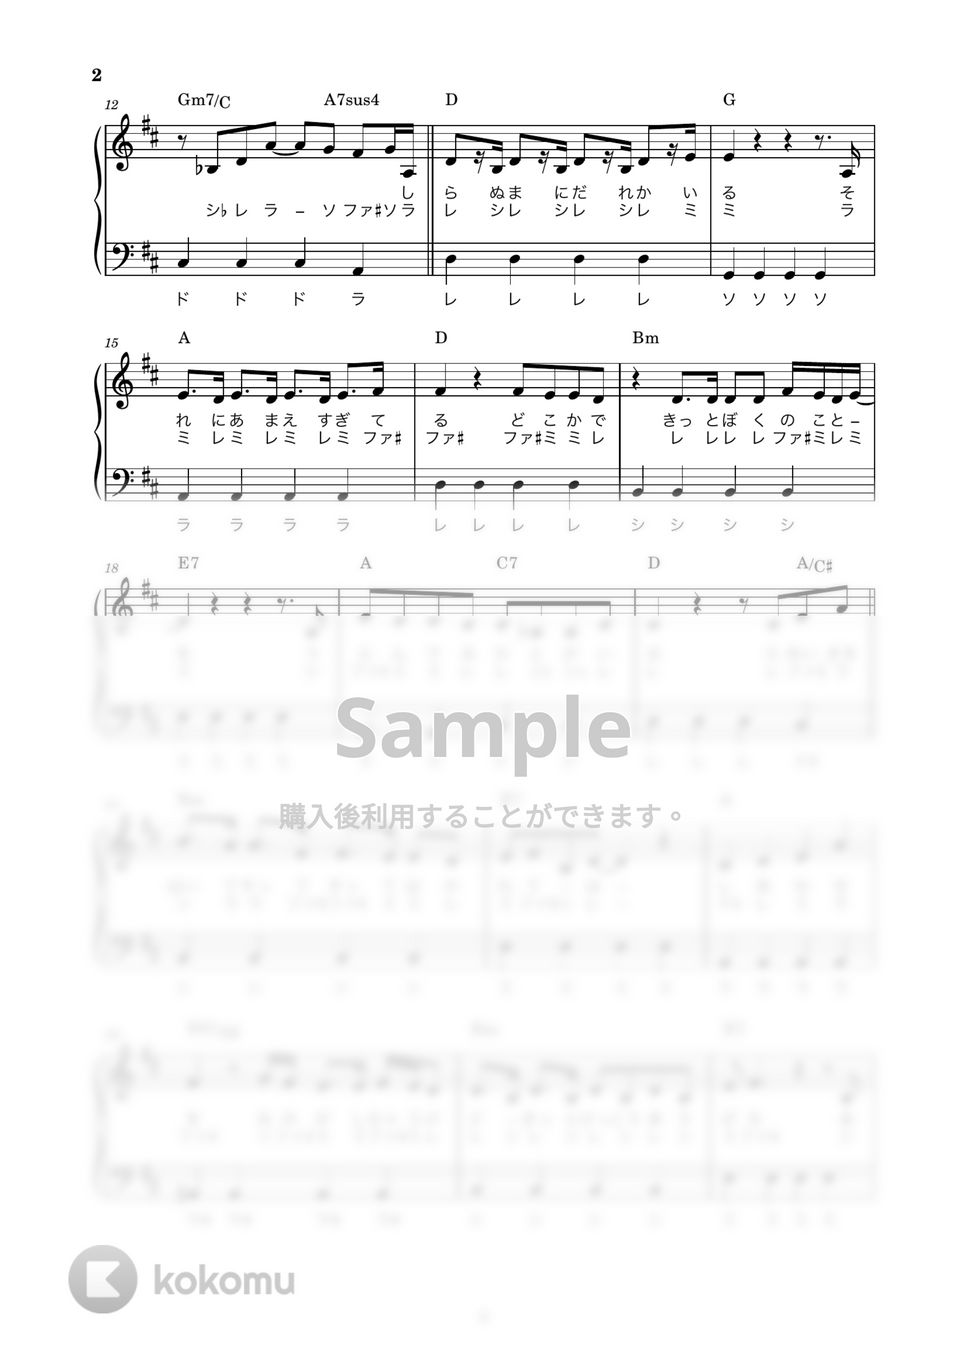 Mrs. GREEN APPLE - ダンスホール (かんたん / 歌詞付き / ドレミ付き / 初心者) by piano.tokyo